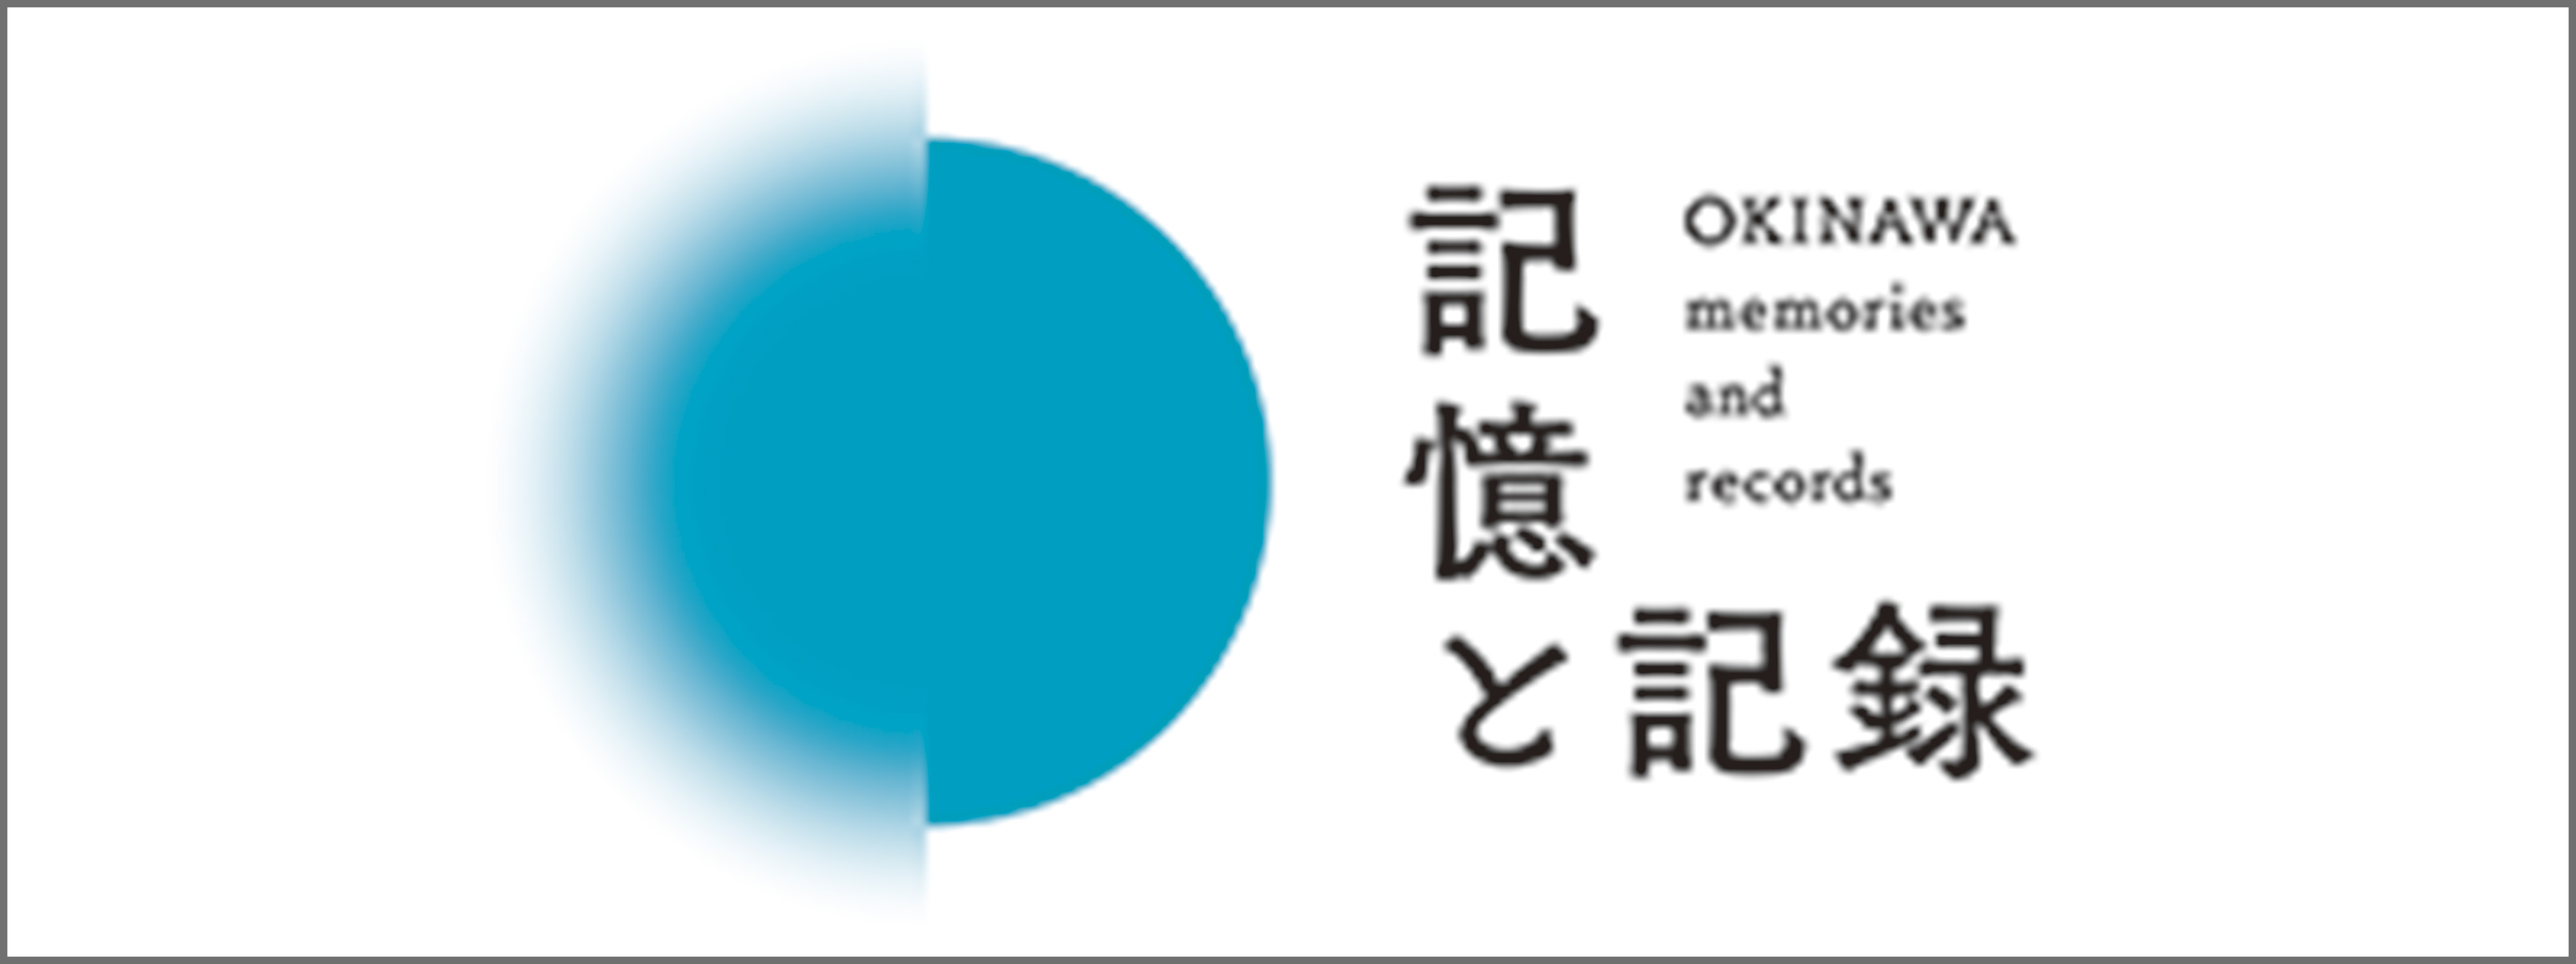 記憶と記録 OKINAWA memories and records